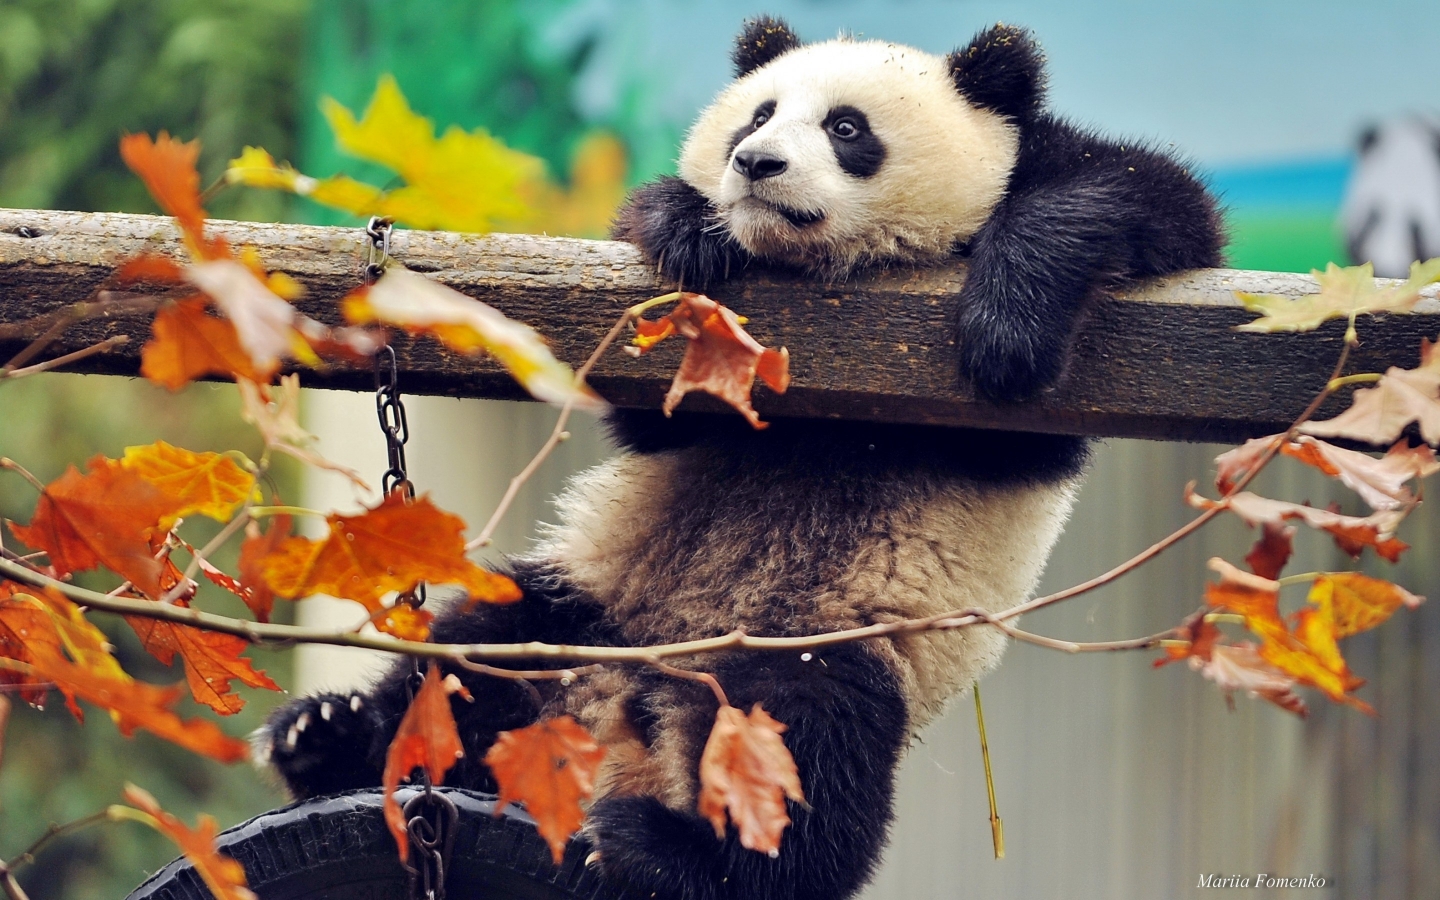 Cute Panda Climbing for 1440 x 900 widescreen resolution